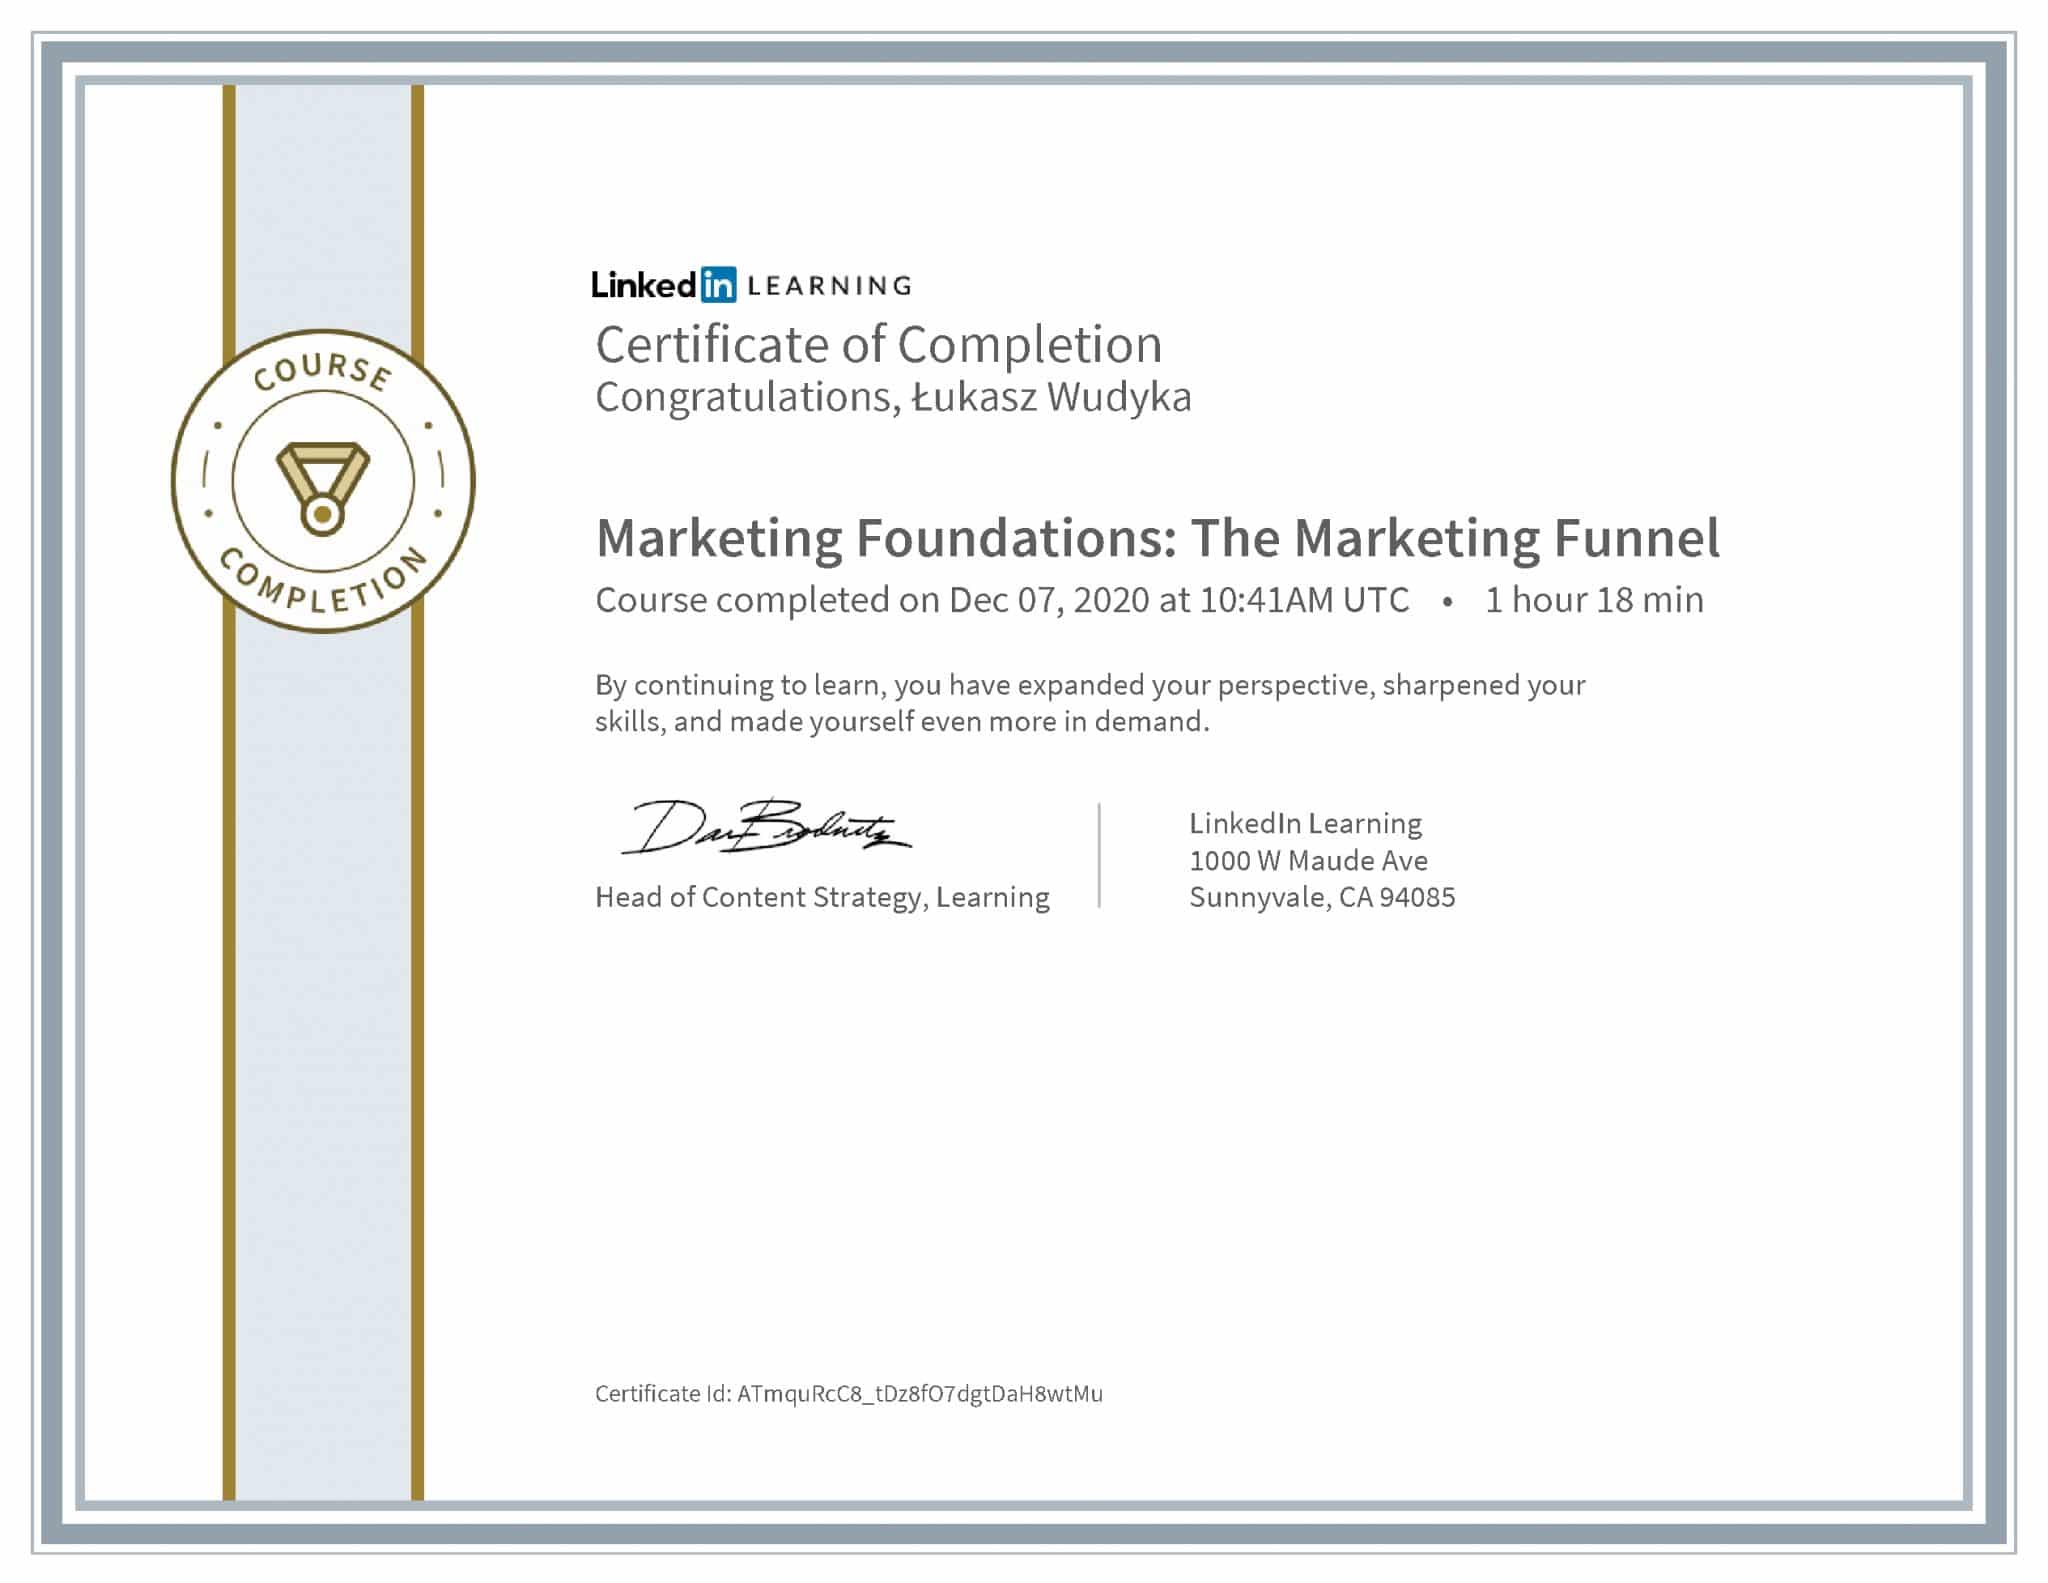 Łukasz Wudyka certyfikat LinkedIn Marketing Foundations: The Marketing Funnel